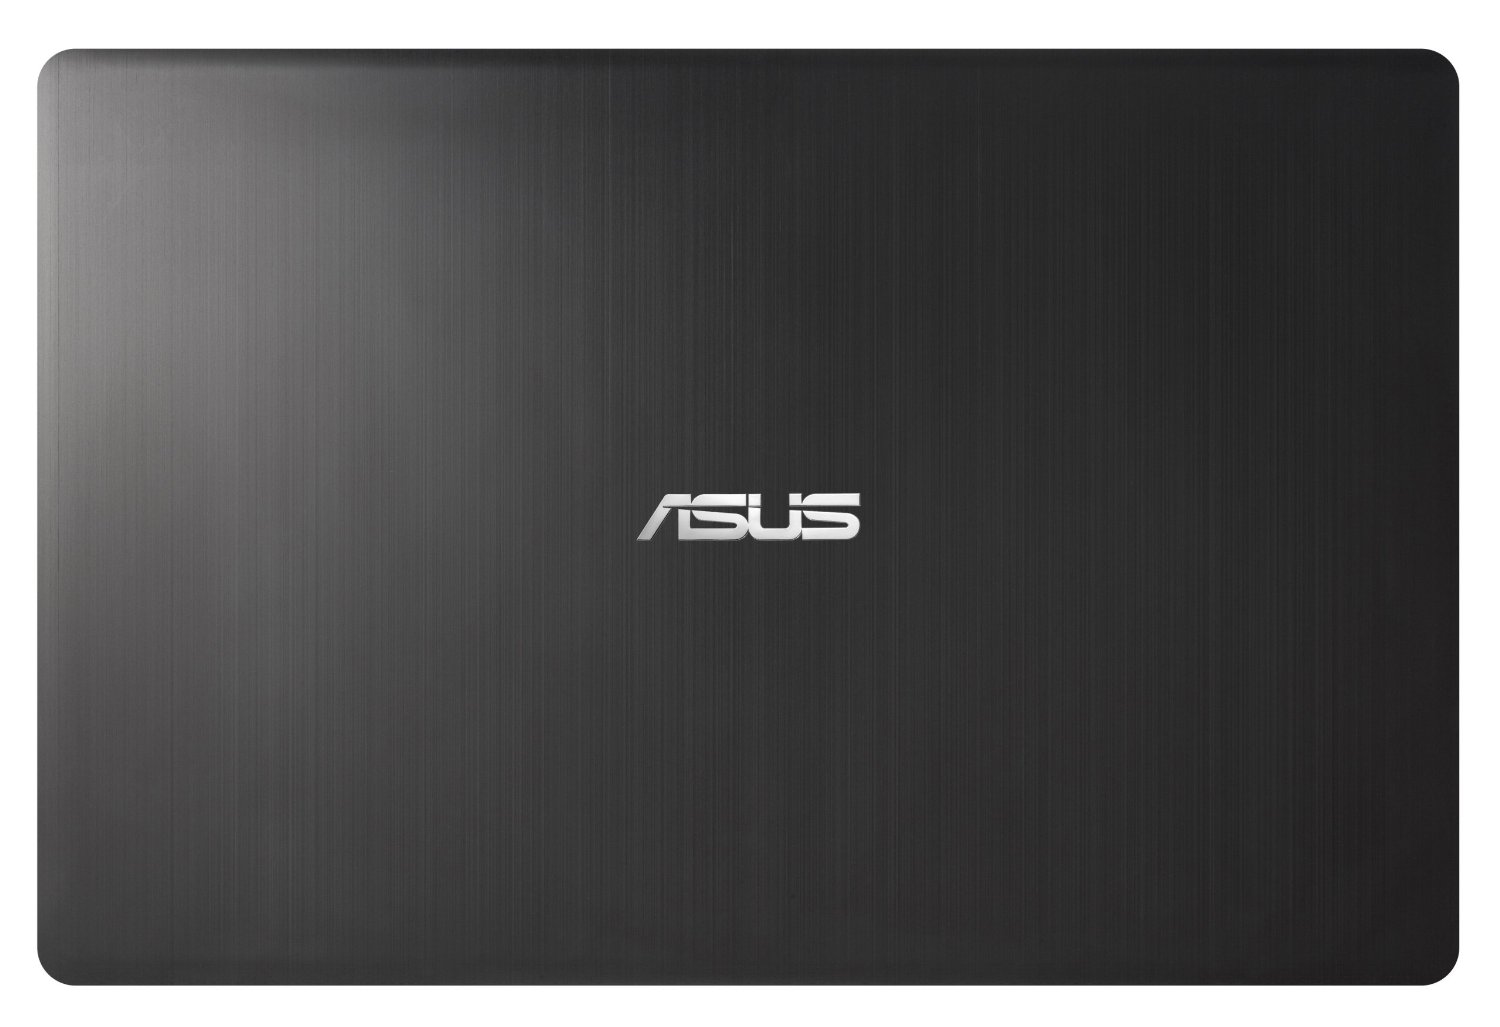 Asus VivoBook V500CA-DB71T